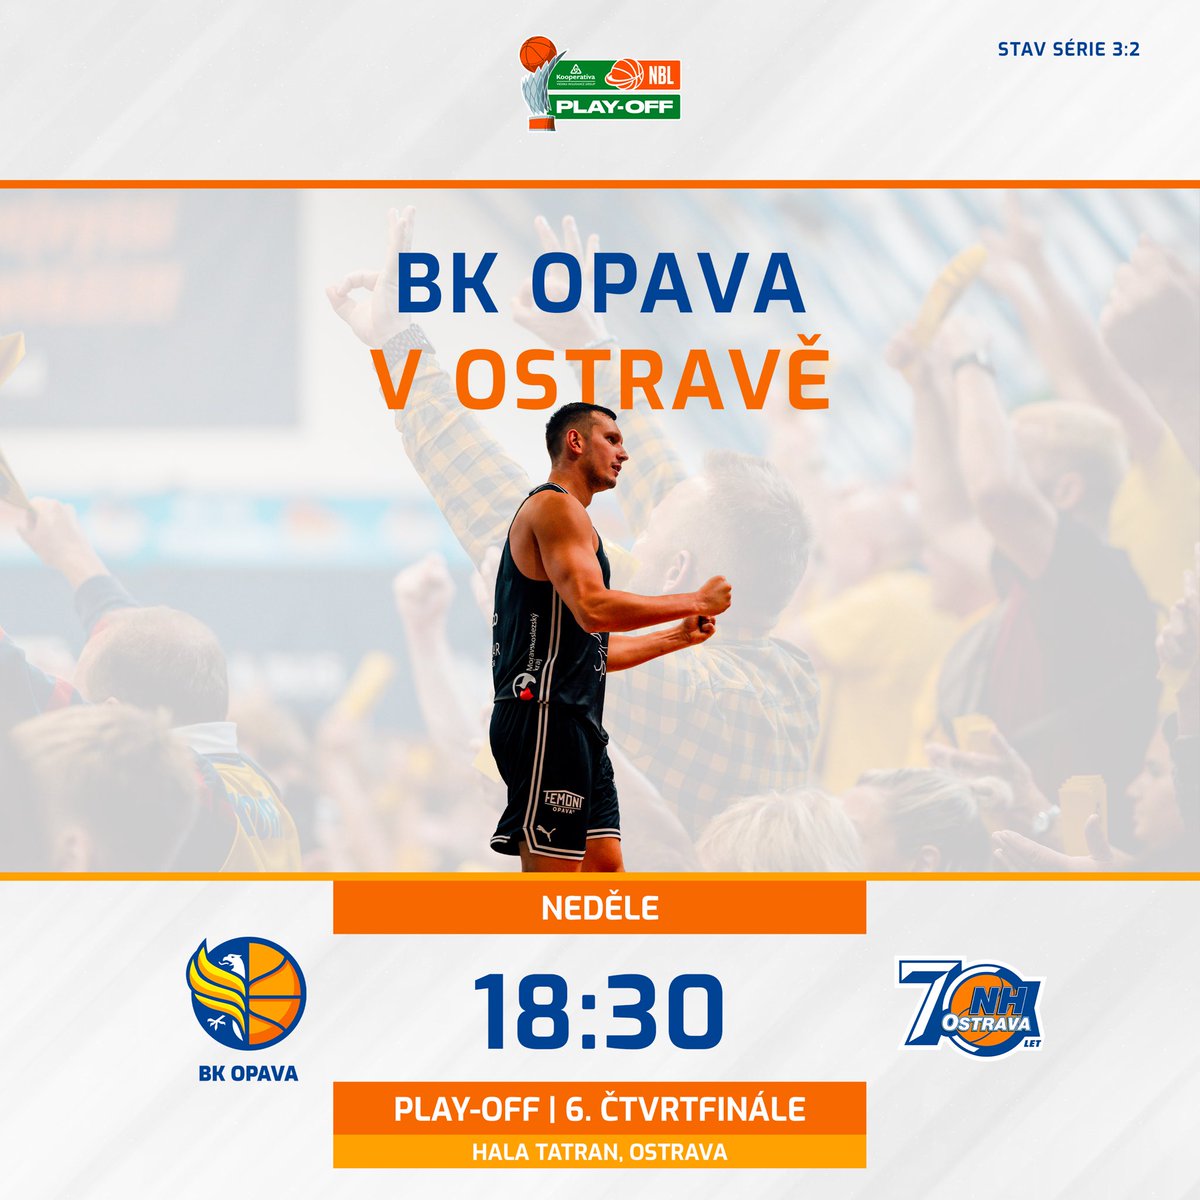 Už zítra nás od 18:30 čeká šestý zápas čtvrtfinále play-off na palubovce @nhostrava 👏
Přijďte nás podpořit do ostravské haly Tatran 🔥
#hejaopava #bkopava #playoff